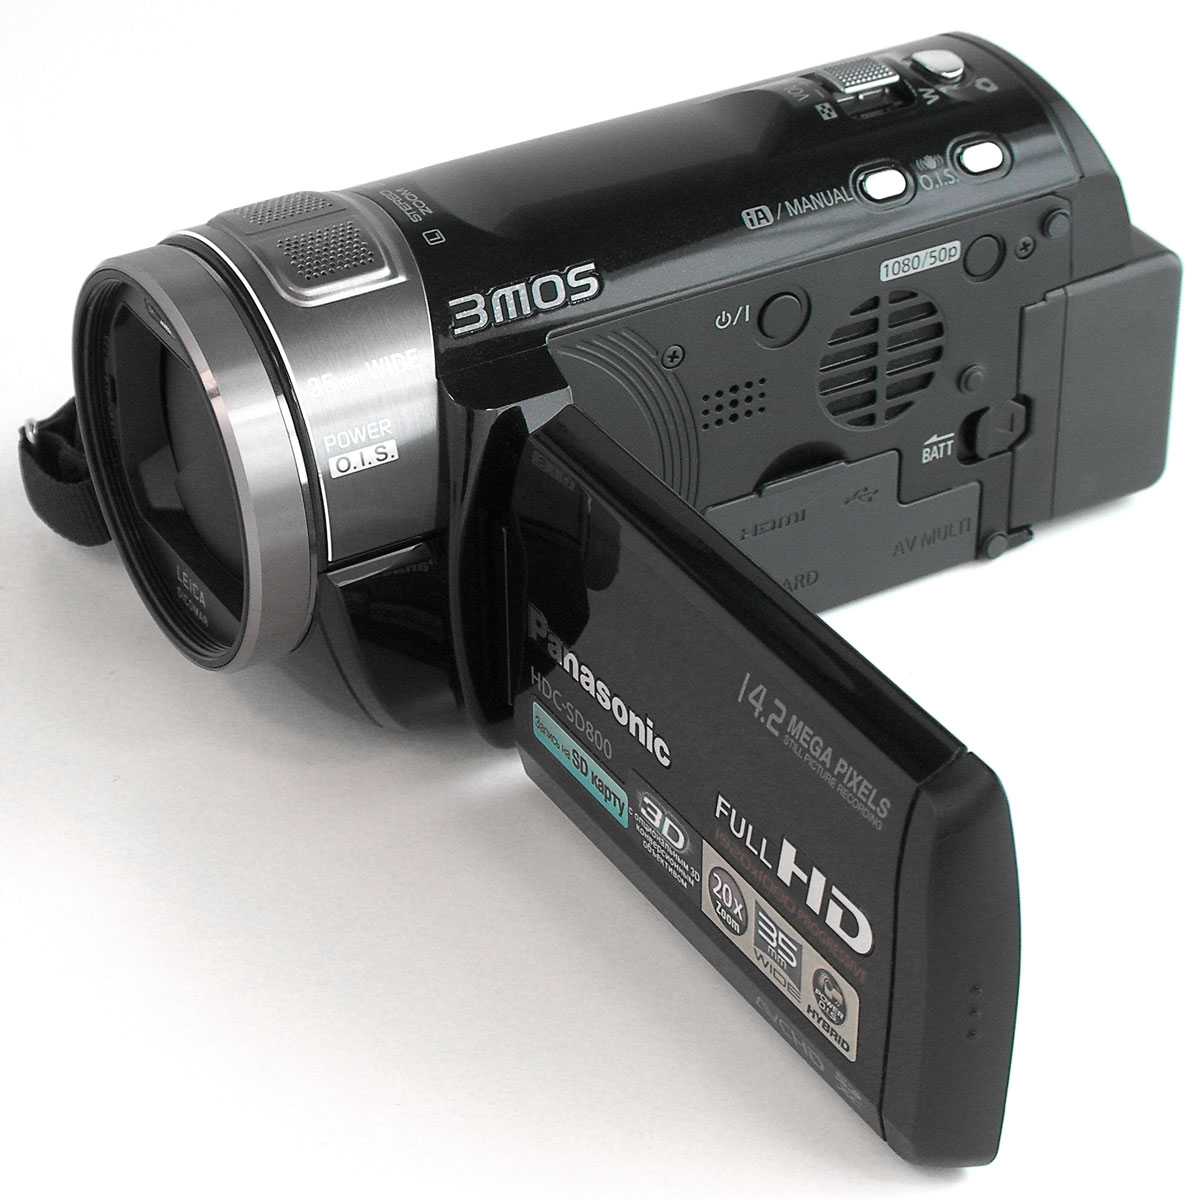 Panasonic hdc-sd800 - купить , скидки, цена, отзывы, обзор, характеристики - видеокамеры